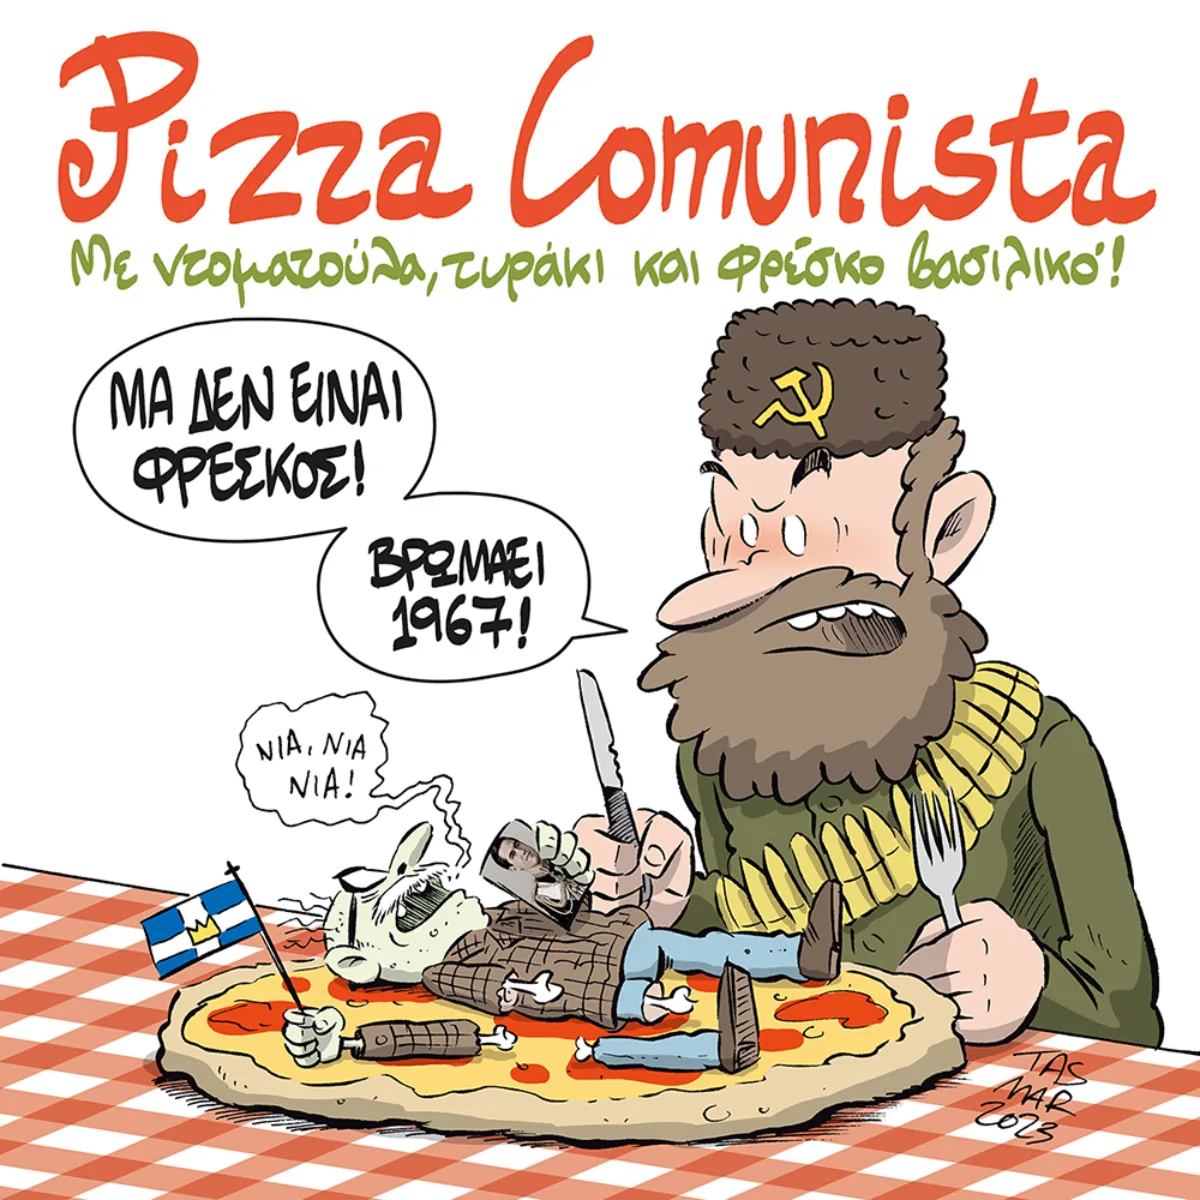 Pizza comunista!